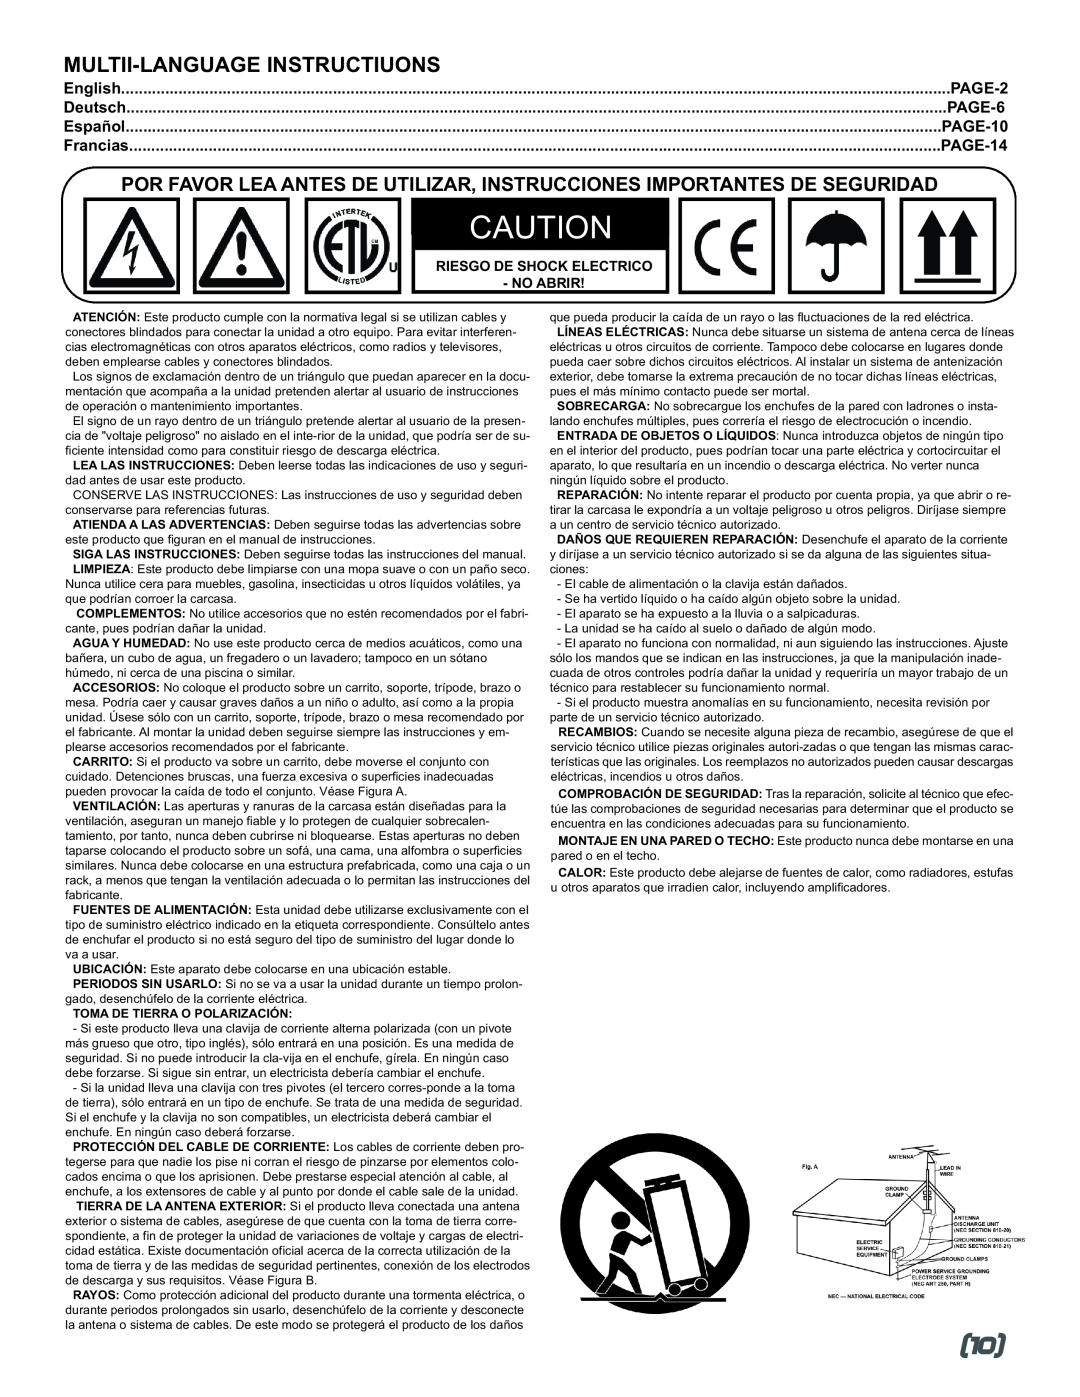 Gemini MM-3000 manual PAGE-2, English, Deutsch, PAGE-6, Español, PAGE-10, Francias, PAGE-14, Toma De Tierra O Polarización 